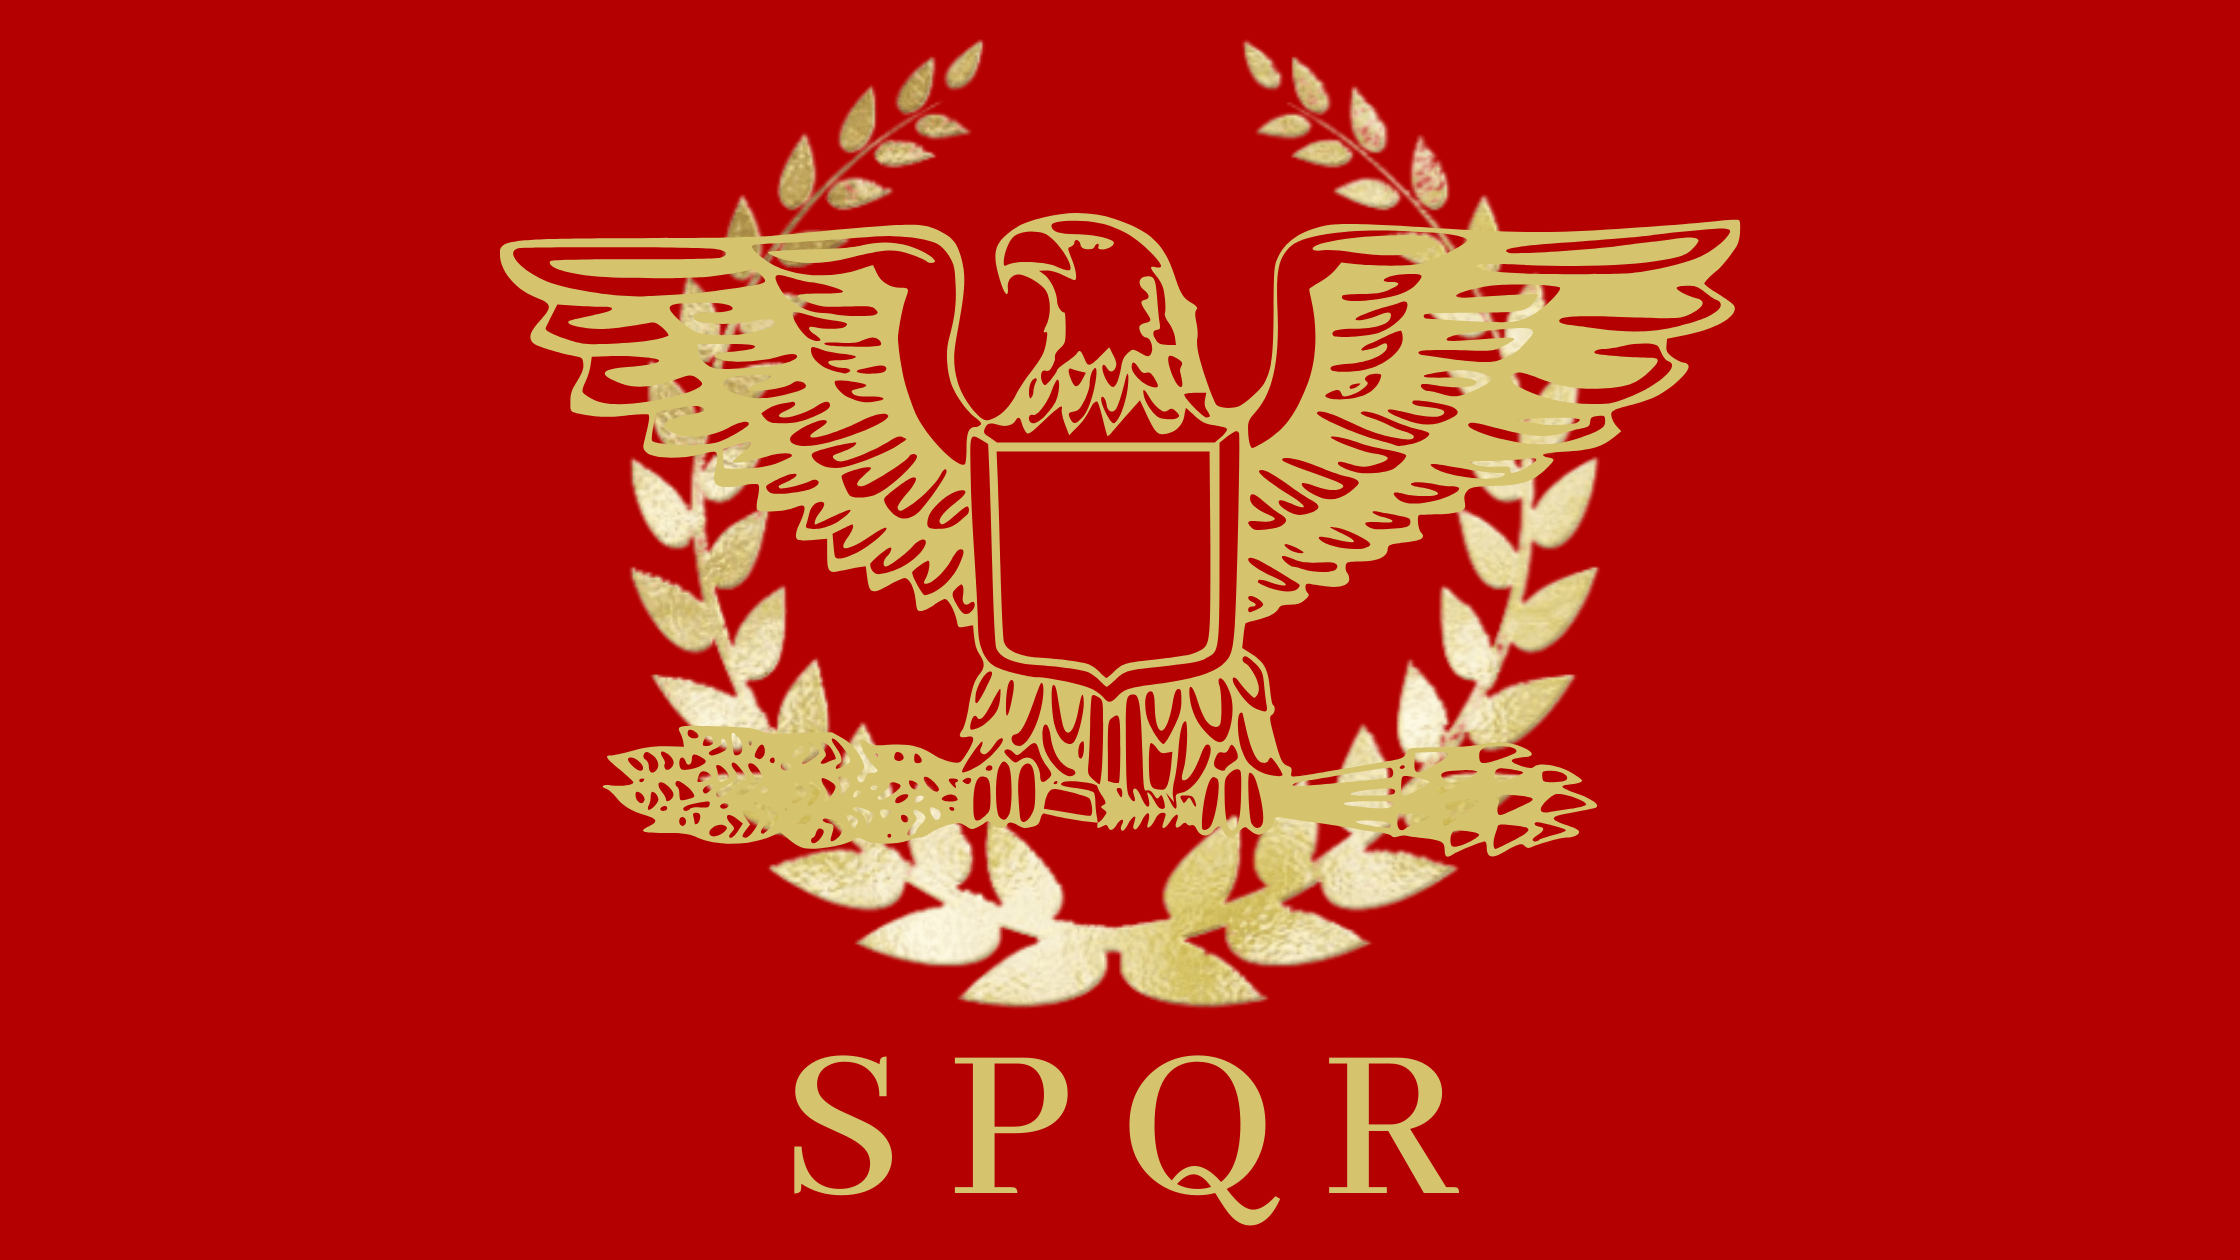 SPQR Bedeutung und Geschichte: Senat und Volk von Rom